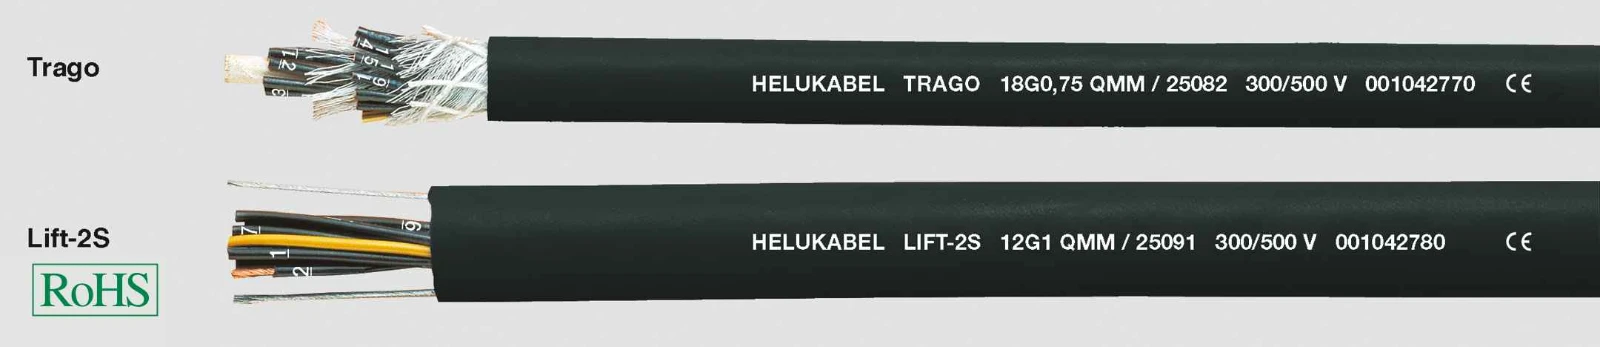 Helukabel Voedingskabel < 1 kV, voor beweegbare toepassingen TRAGO / Lift-2S